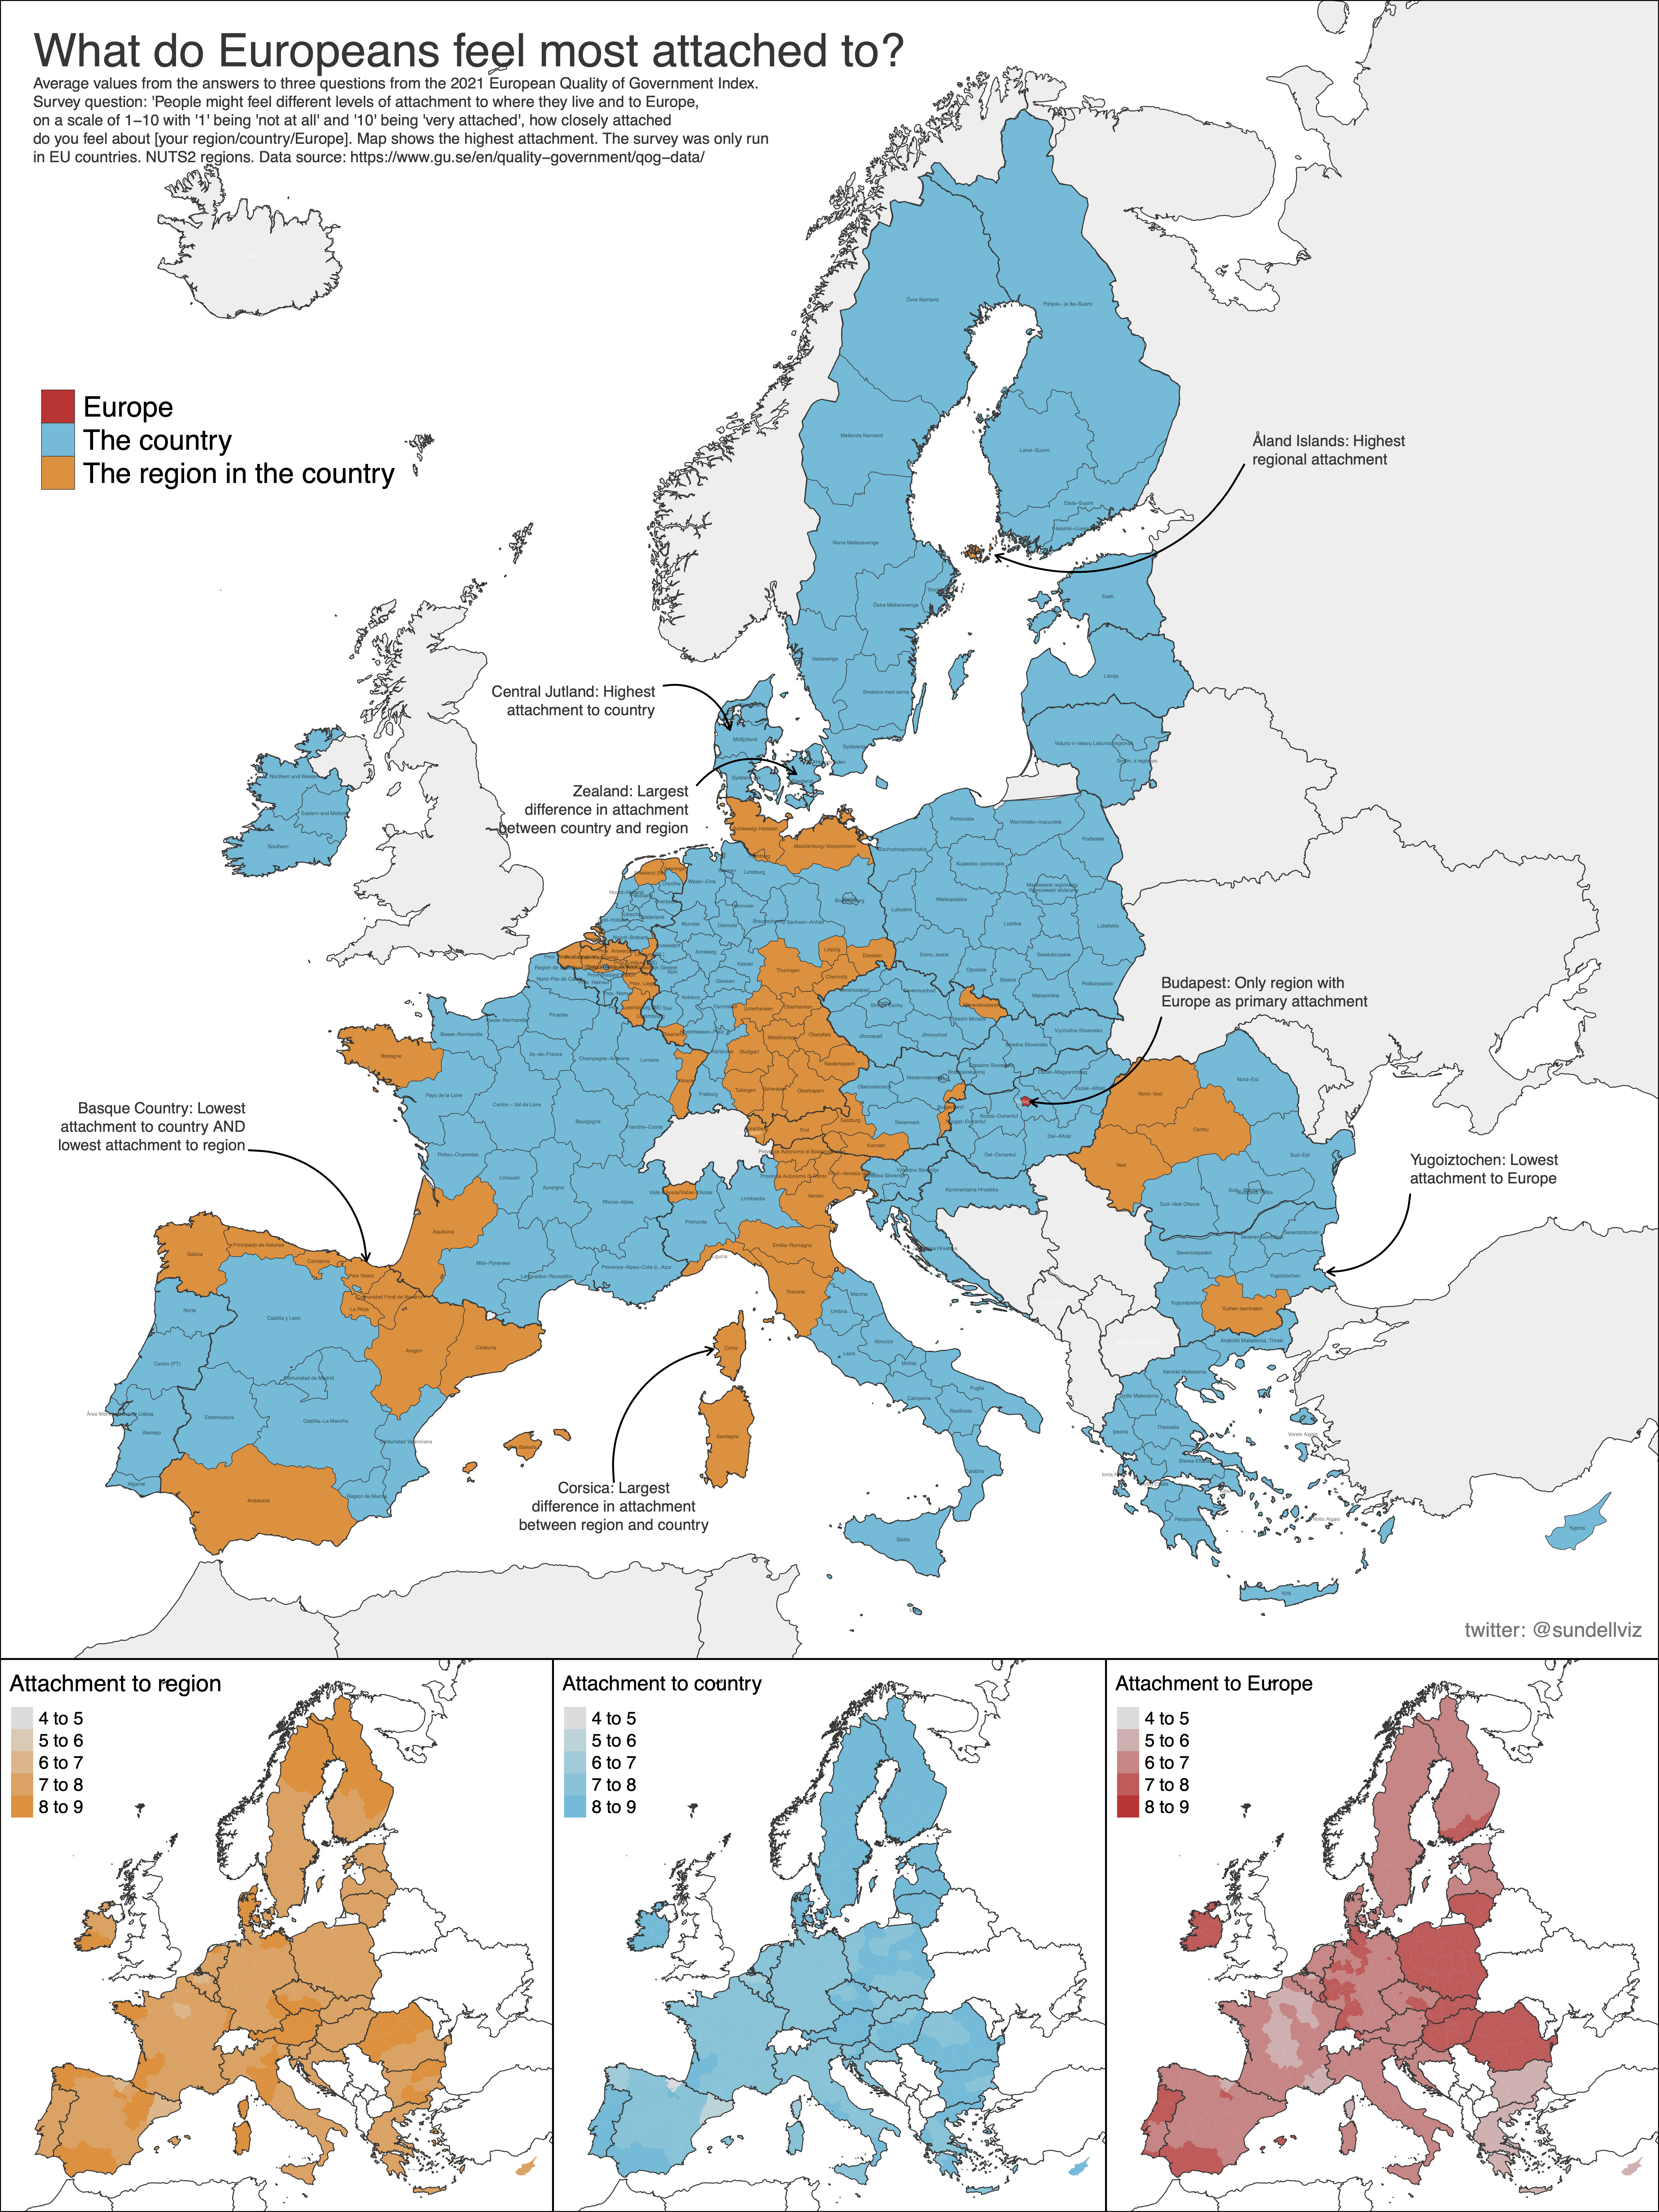 К чему европейцы больше привязаны? 